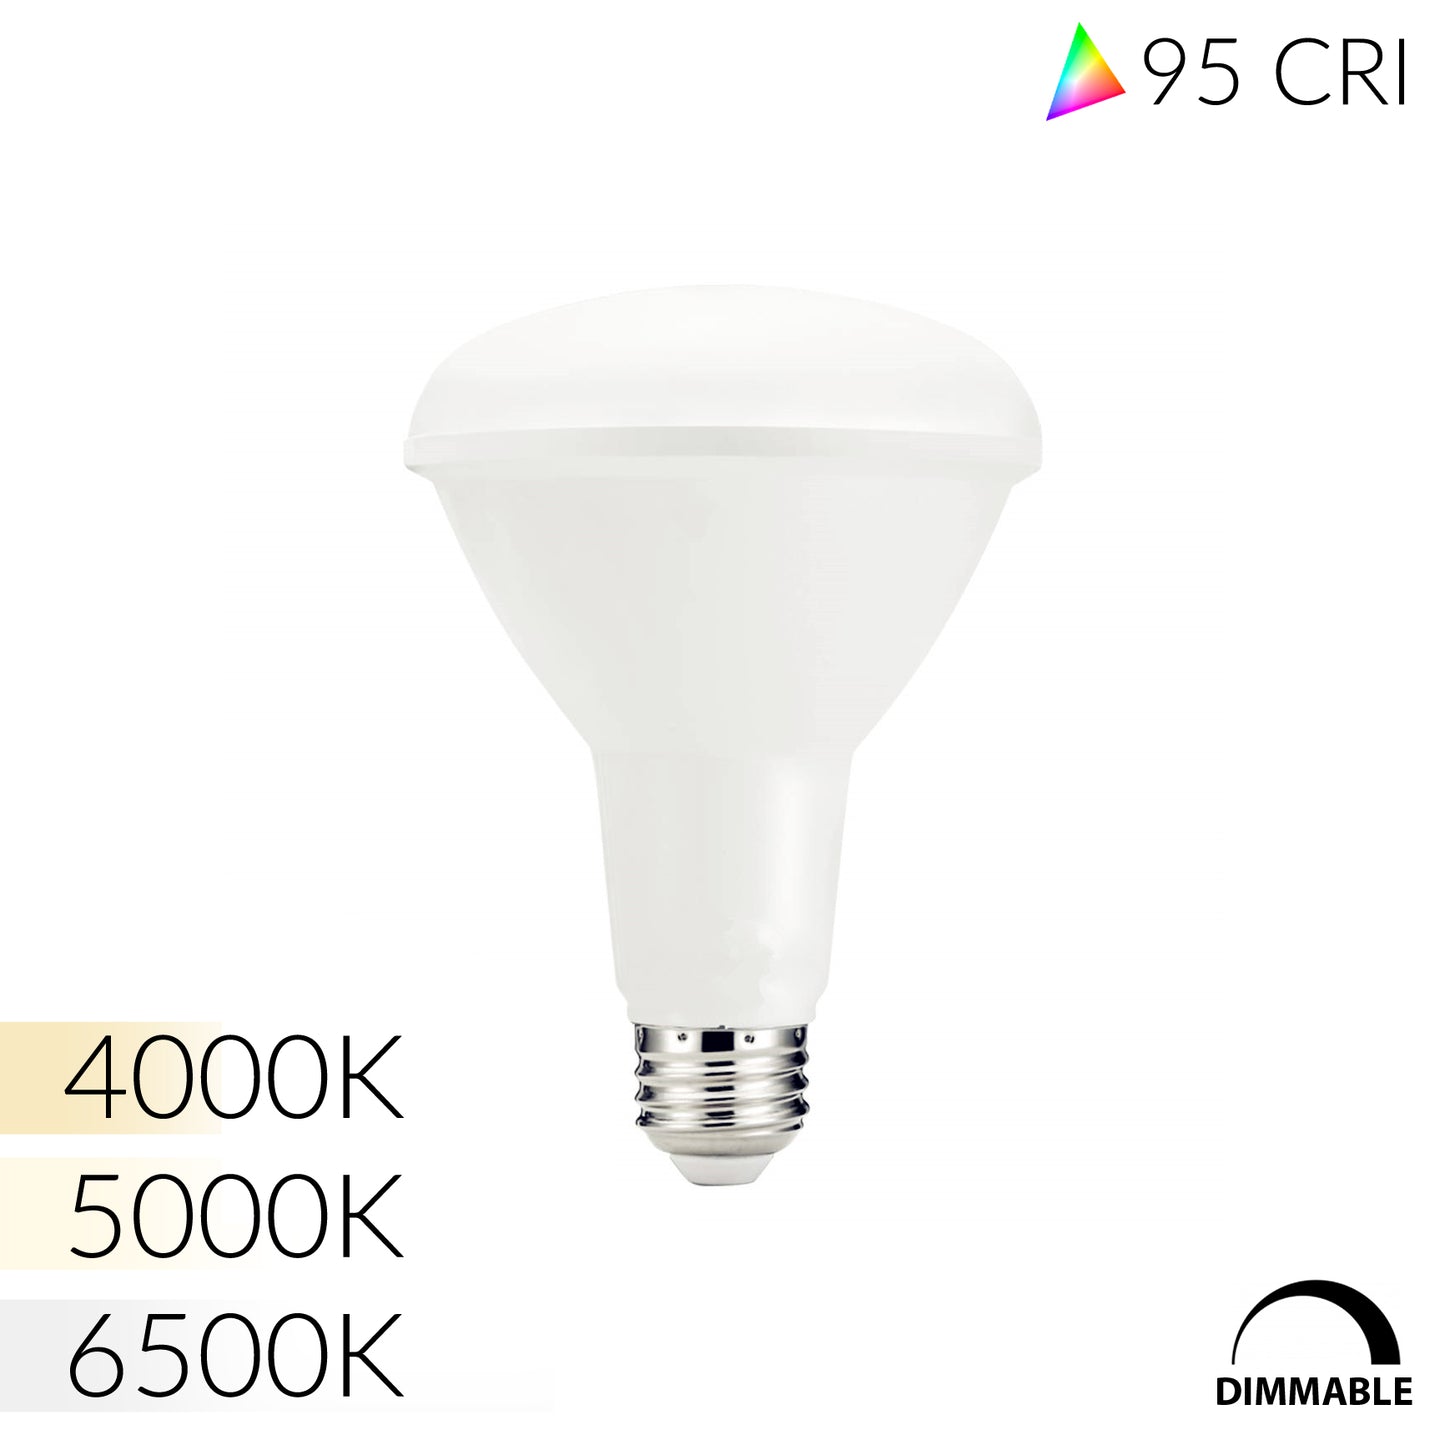 Full Spectrum E26 BR30 LED Bulb